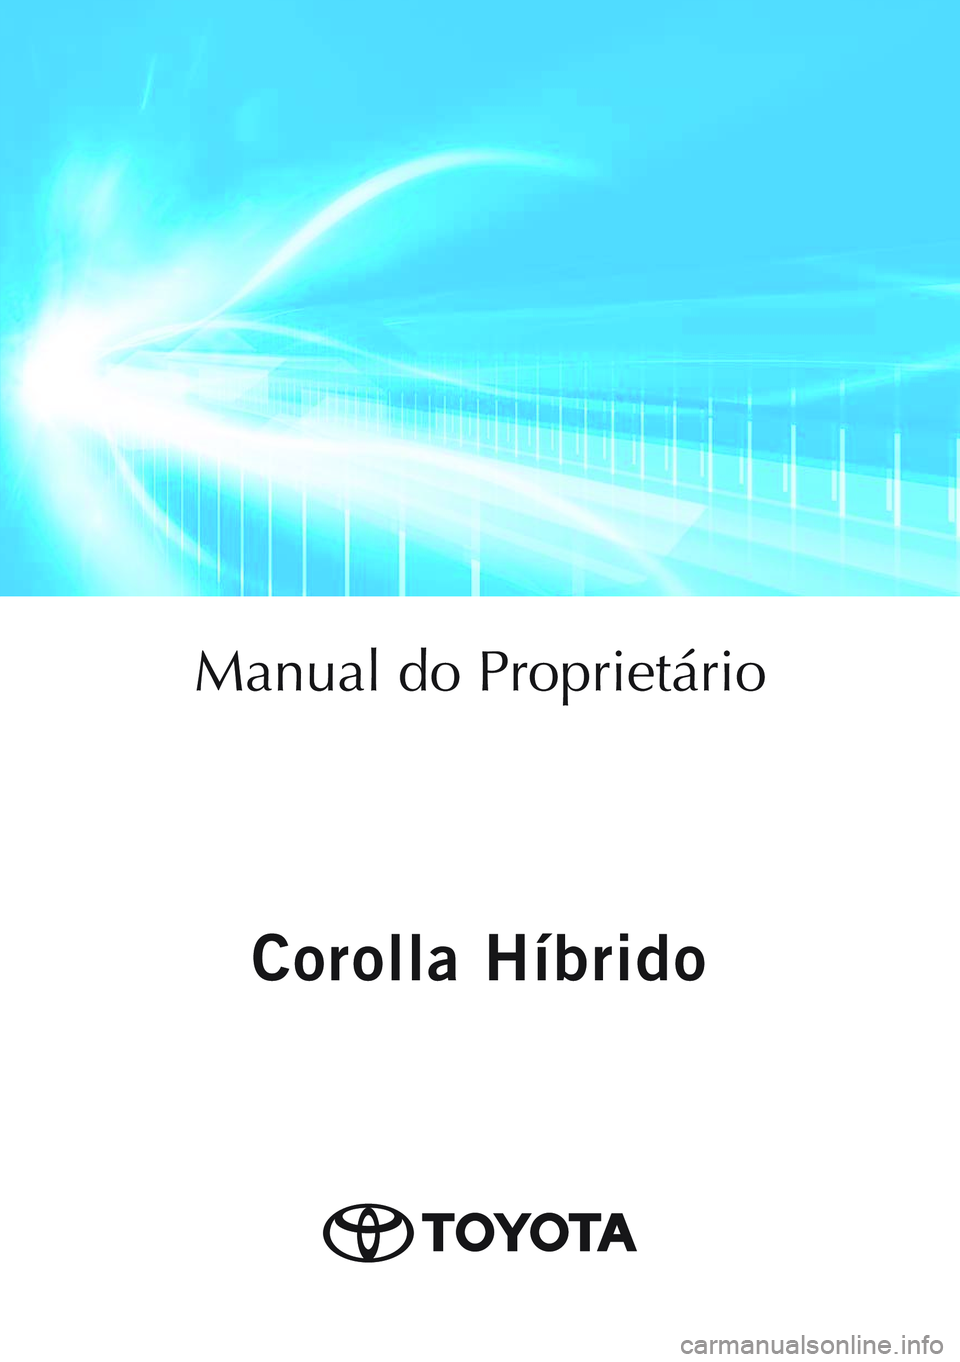 TOYOTA COROLLA HATCHBACK 2021  Manual de utilização (in Portuguese) Corolla Híbrido
Corolla Híbrido
Manual do Proprietário
Mod. OM12P55PT
Public. N.º OM12P55E
ORGAL-PORTO 